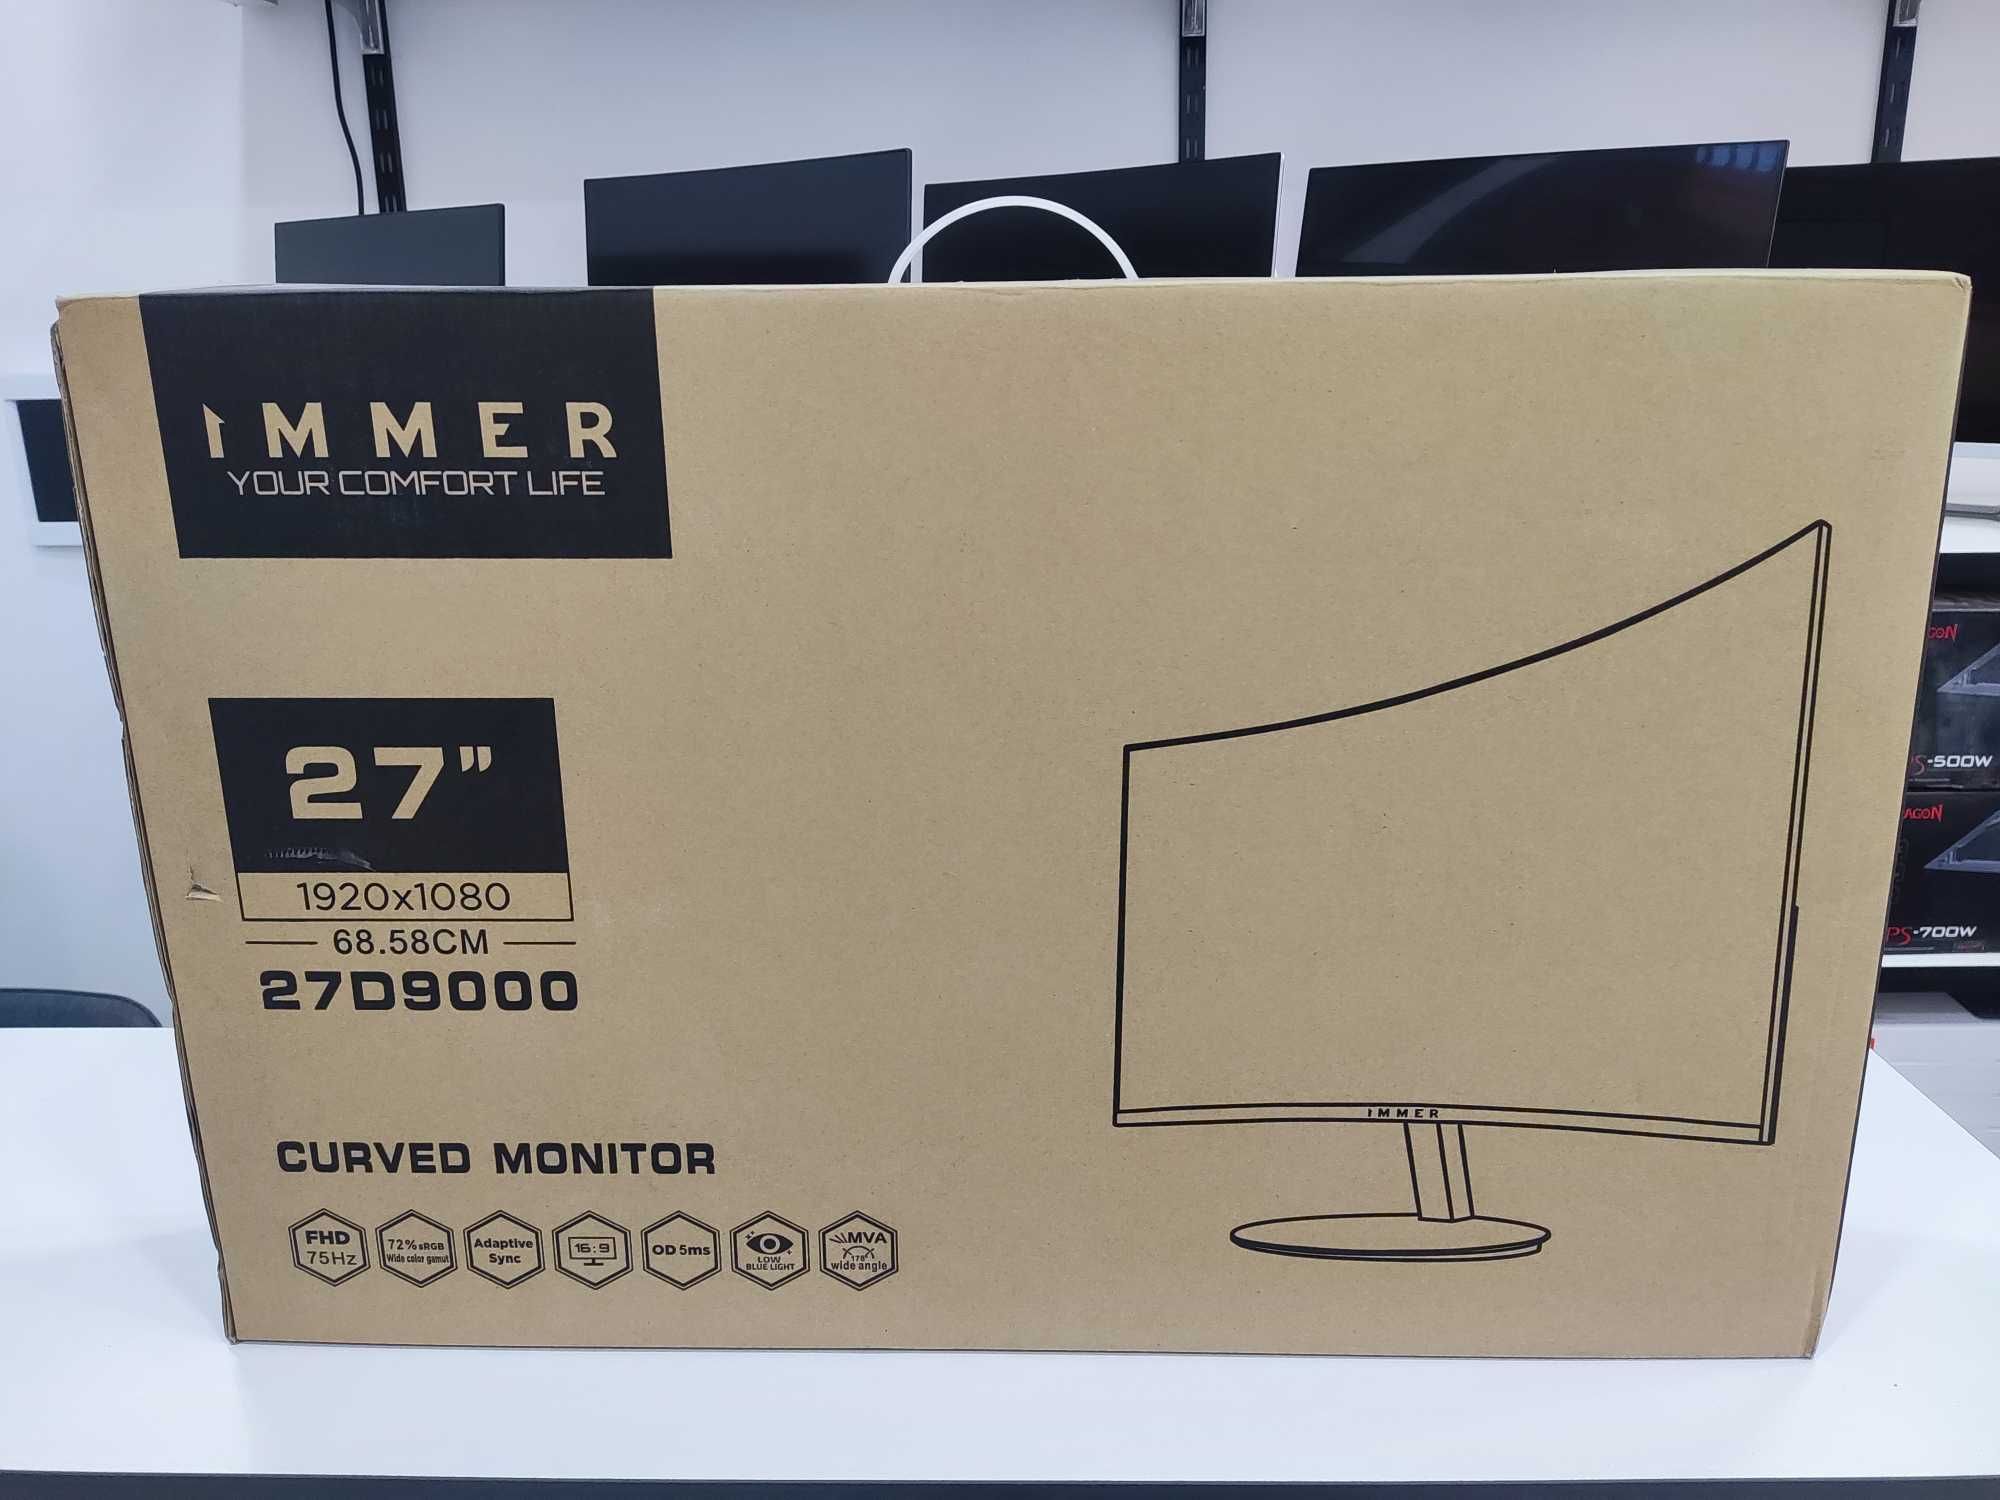 Монитор Immer 27" D9000 Curved FullHD 1920x1080, VGA+HDMI НОВЫЙ